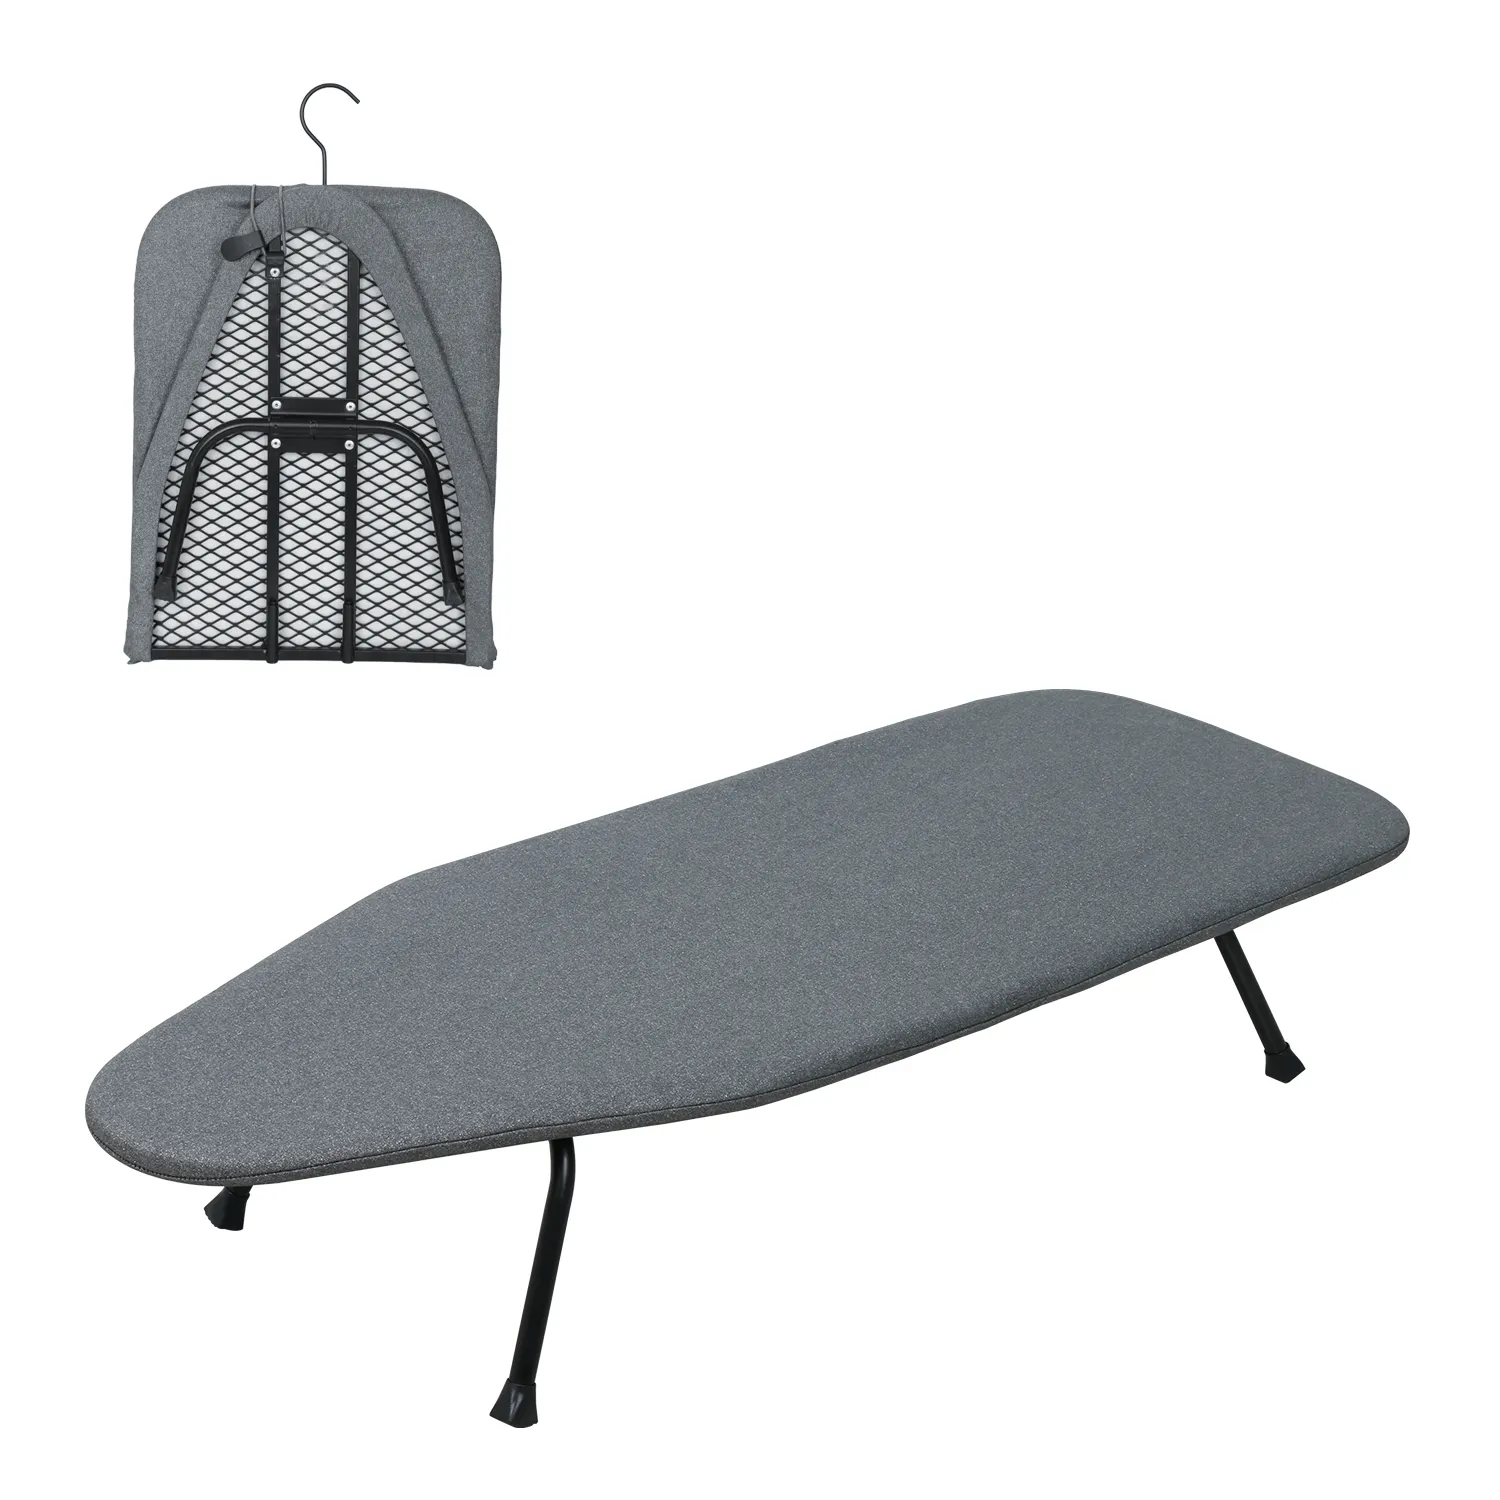 Papan setrika lipat atasan jaring logam Mini, papan setrika kecil bisa dilipat untuk meja